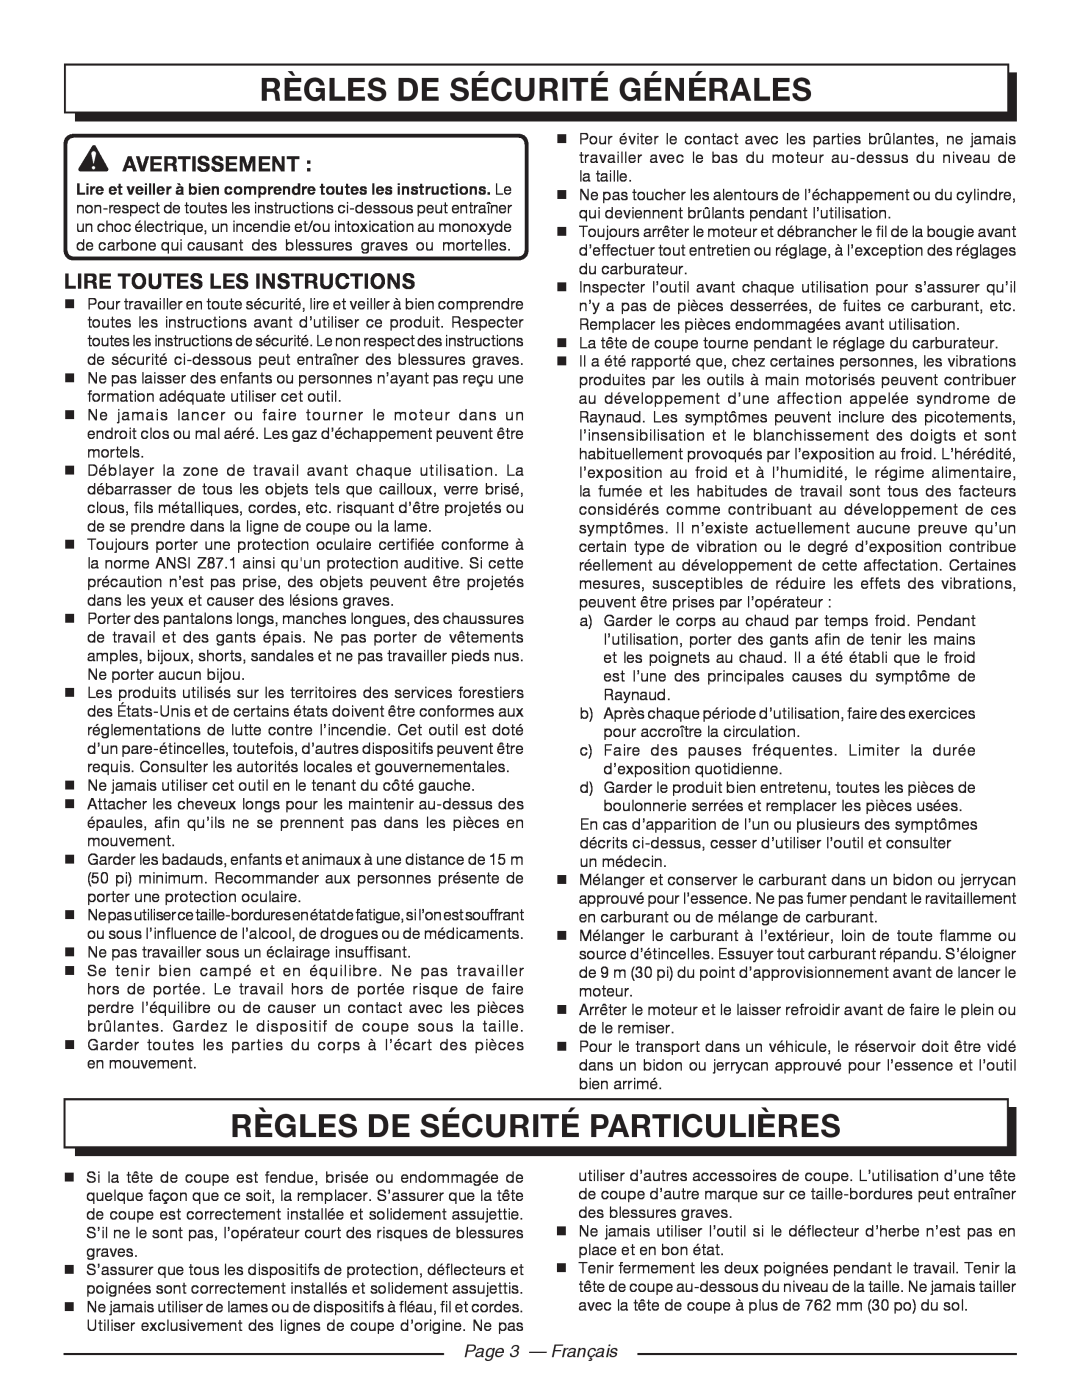 Homelite UT32600 Règles De Sécurité Générales, Règles De Sécurité Particulières, Avertissement , Page 3 - Français 